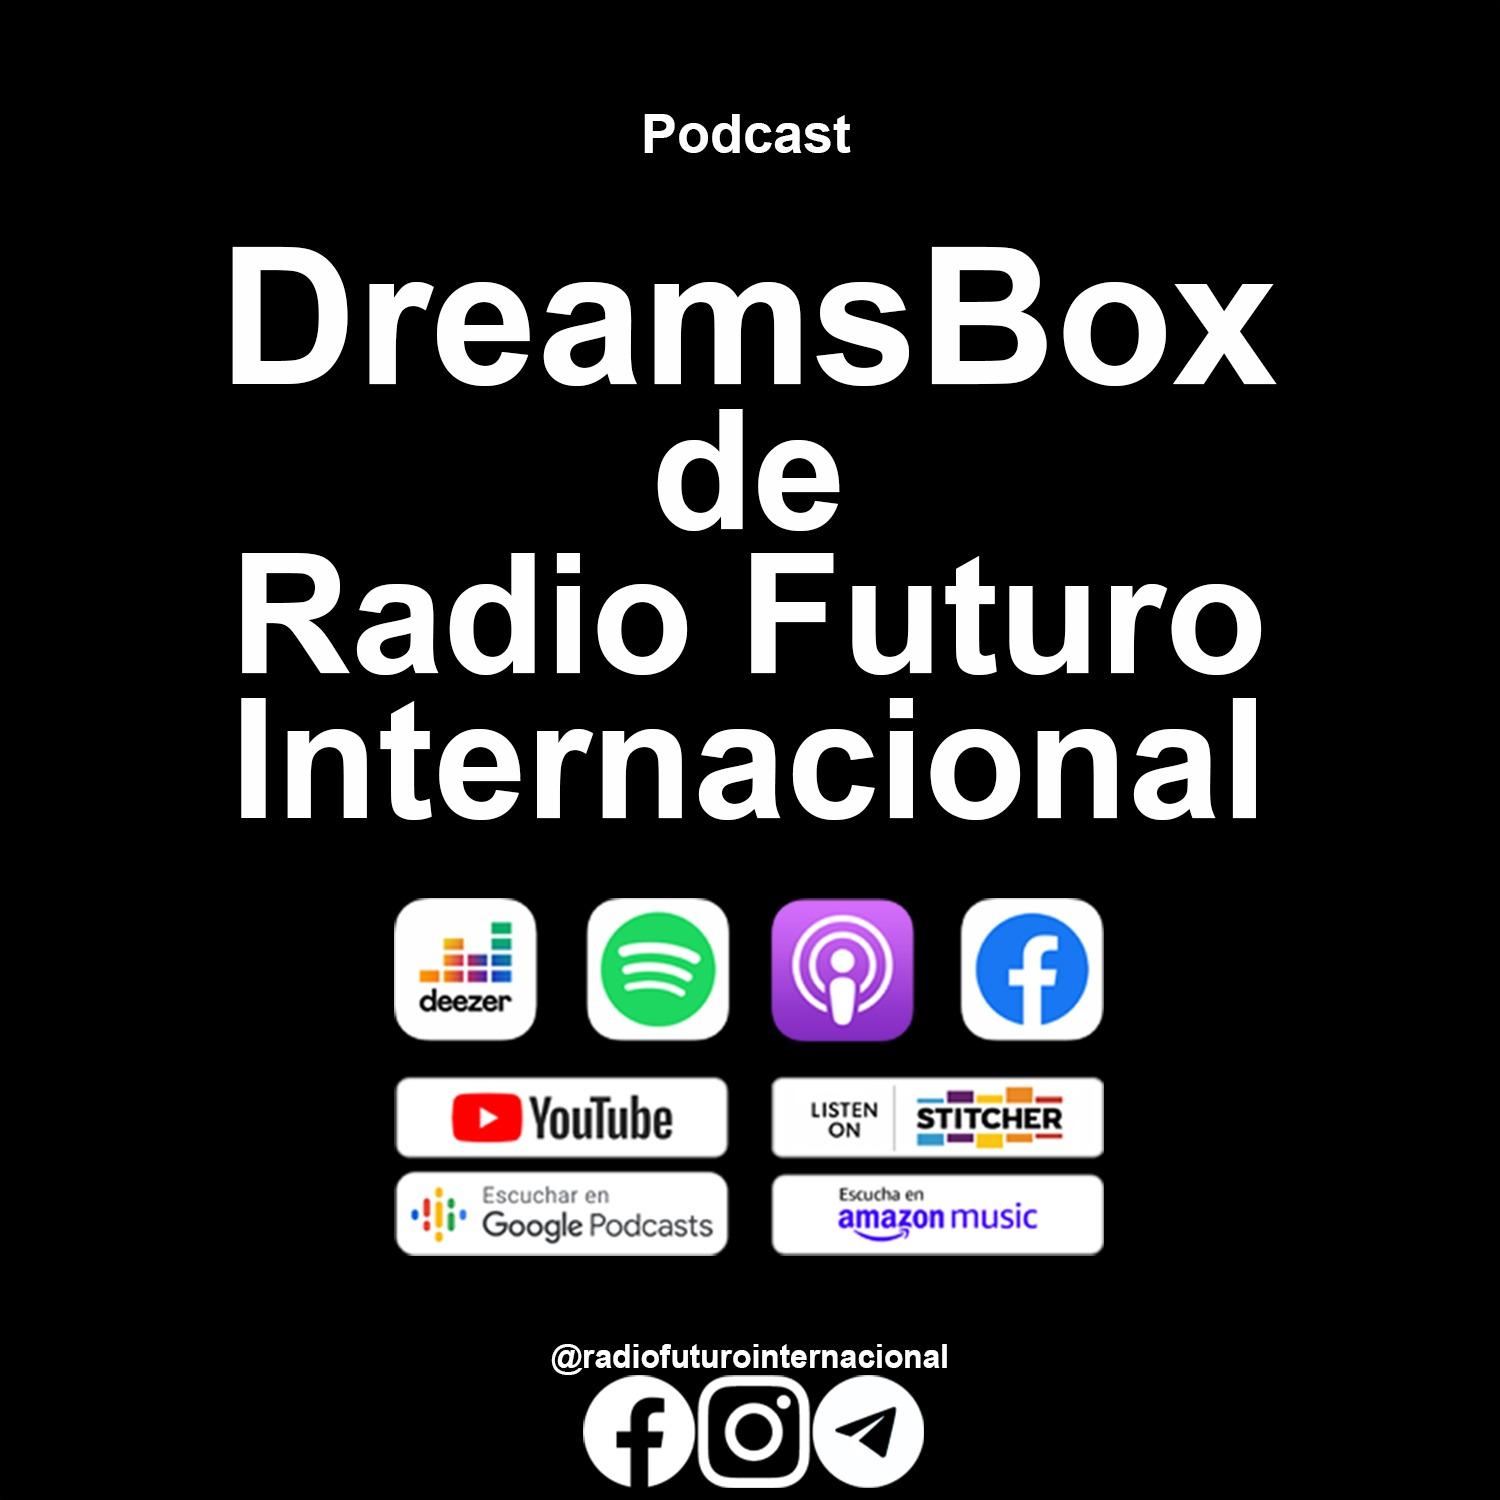 DreamsBox de Radio Futuro Internacional